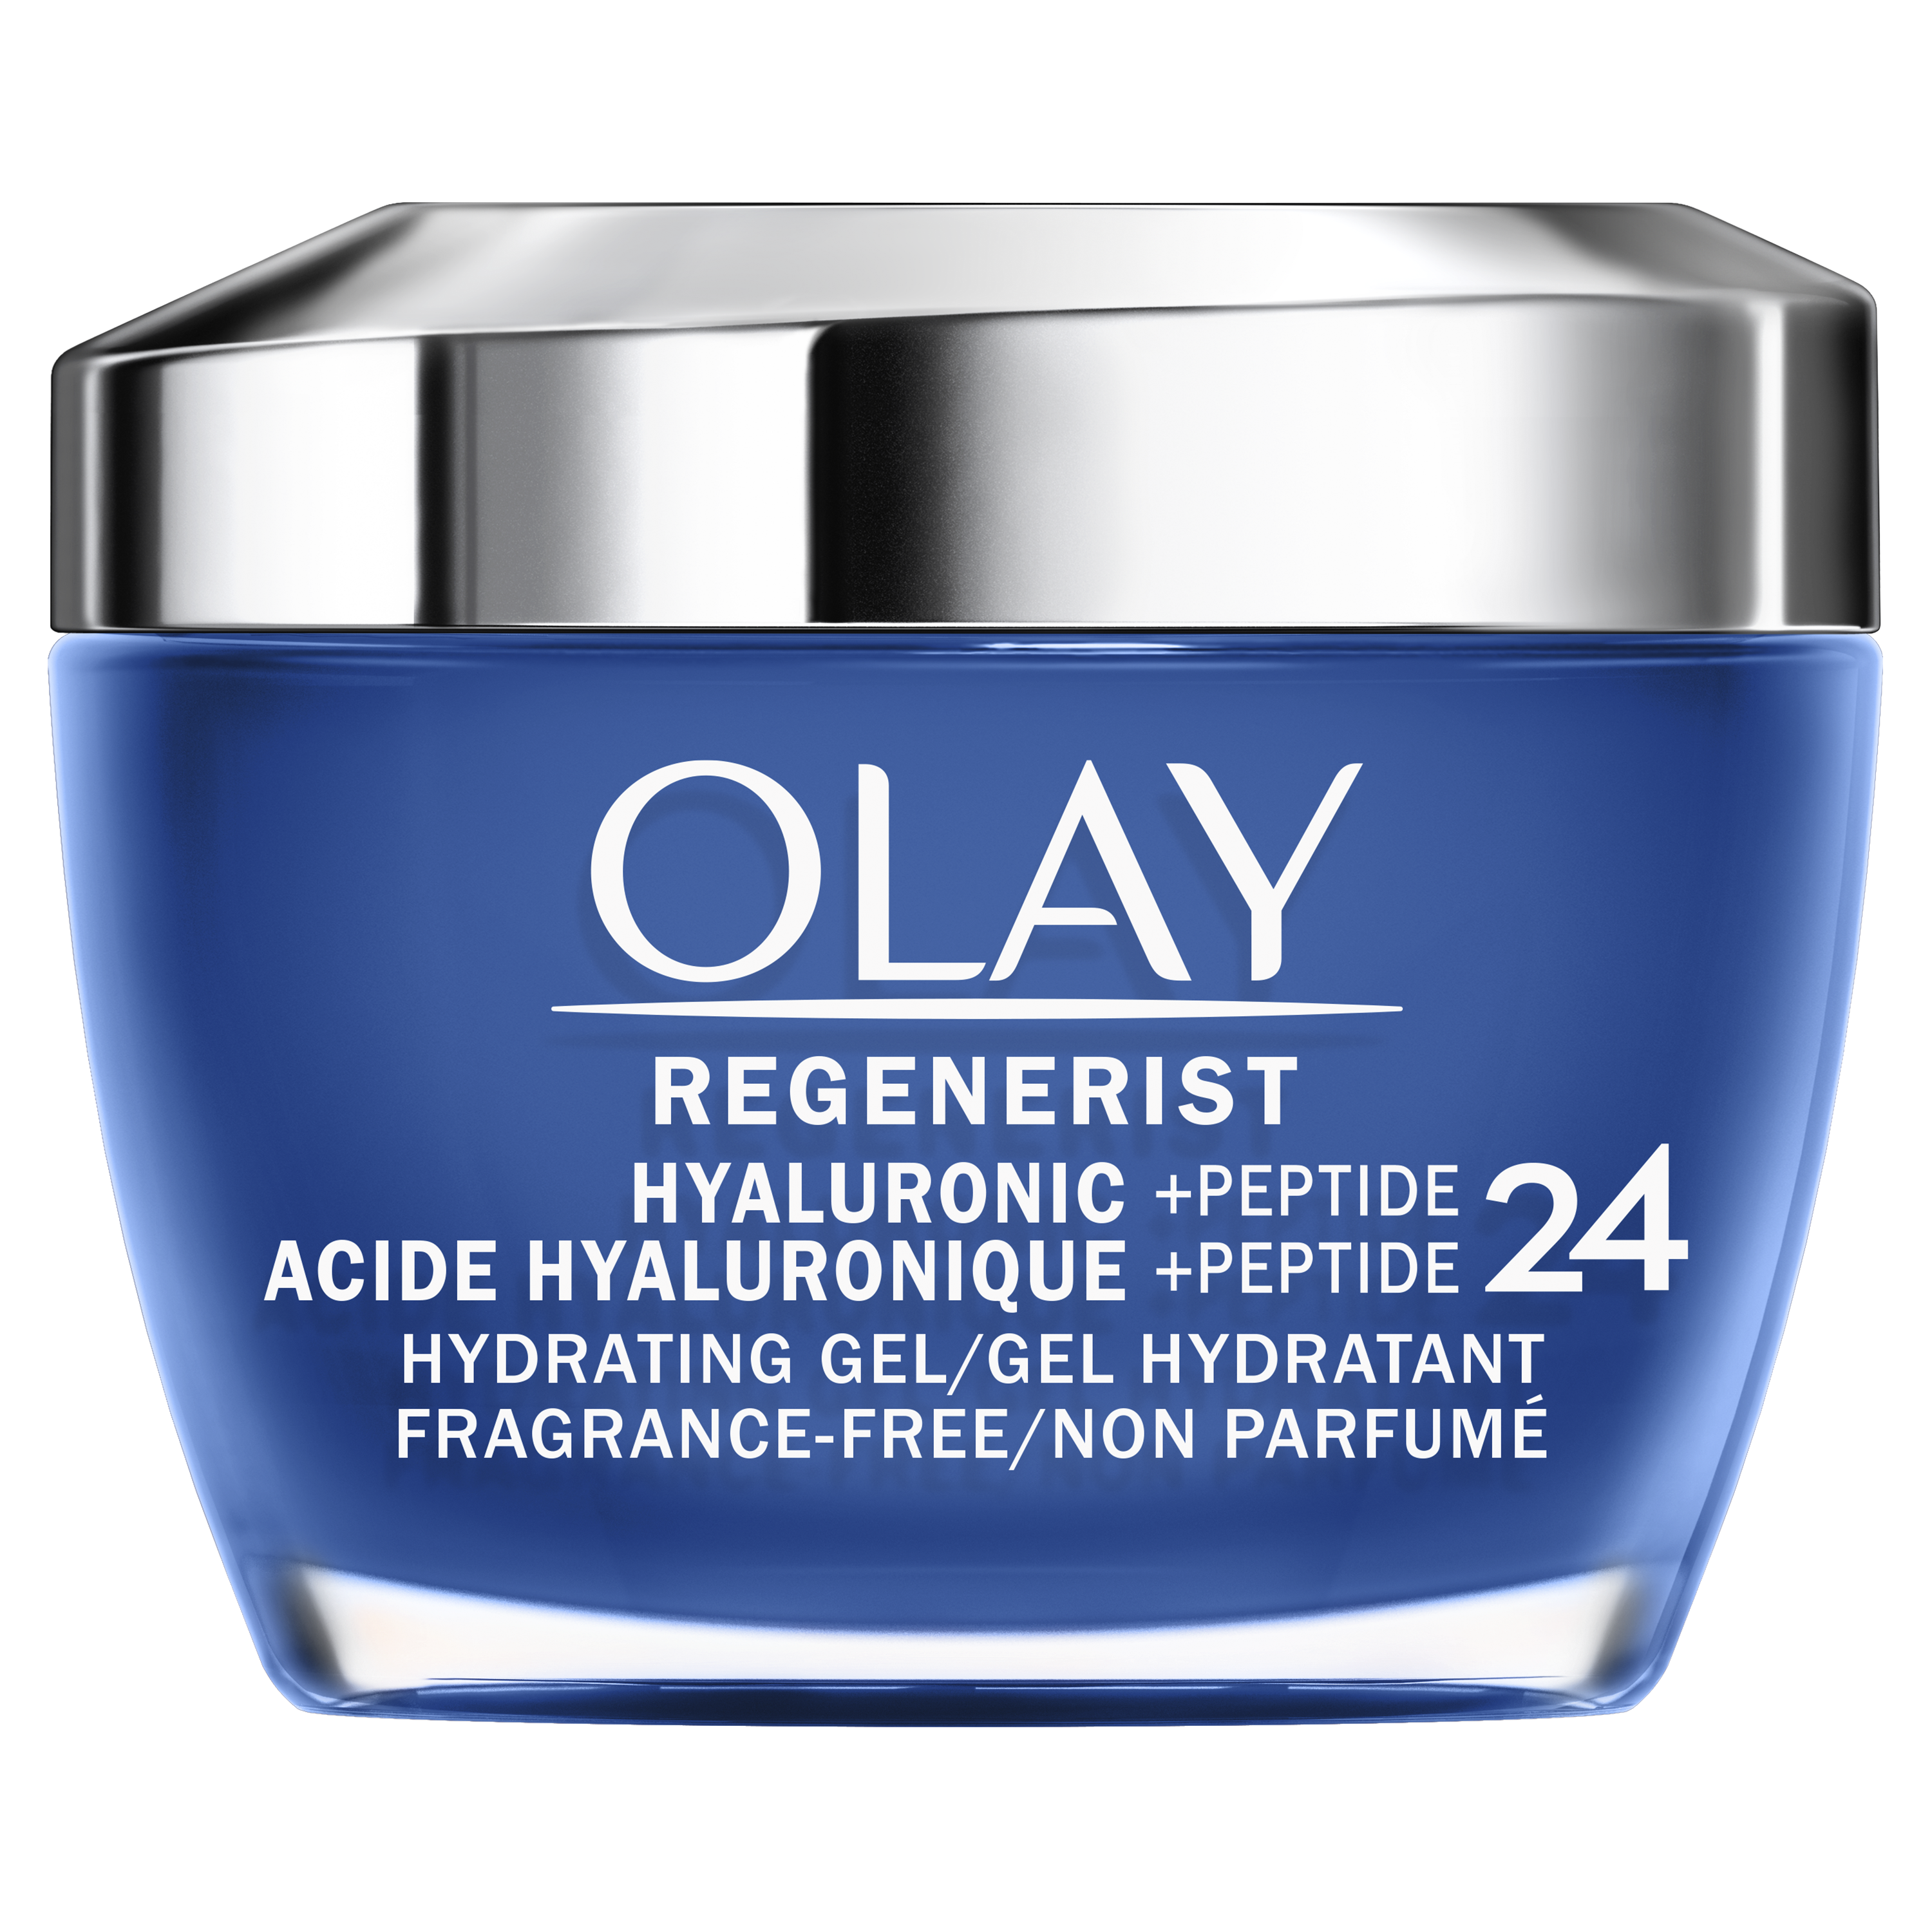 Gel visage Olay Regenerist acide hyaluronique + peptide 24